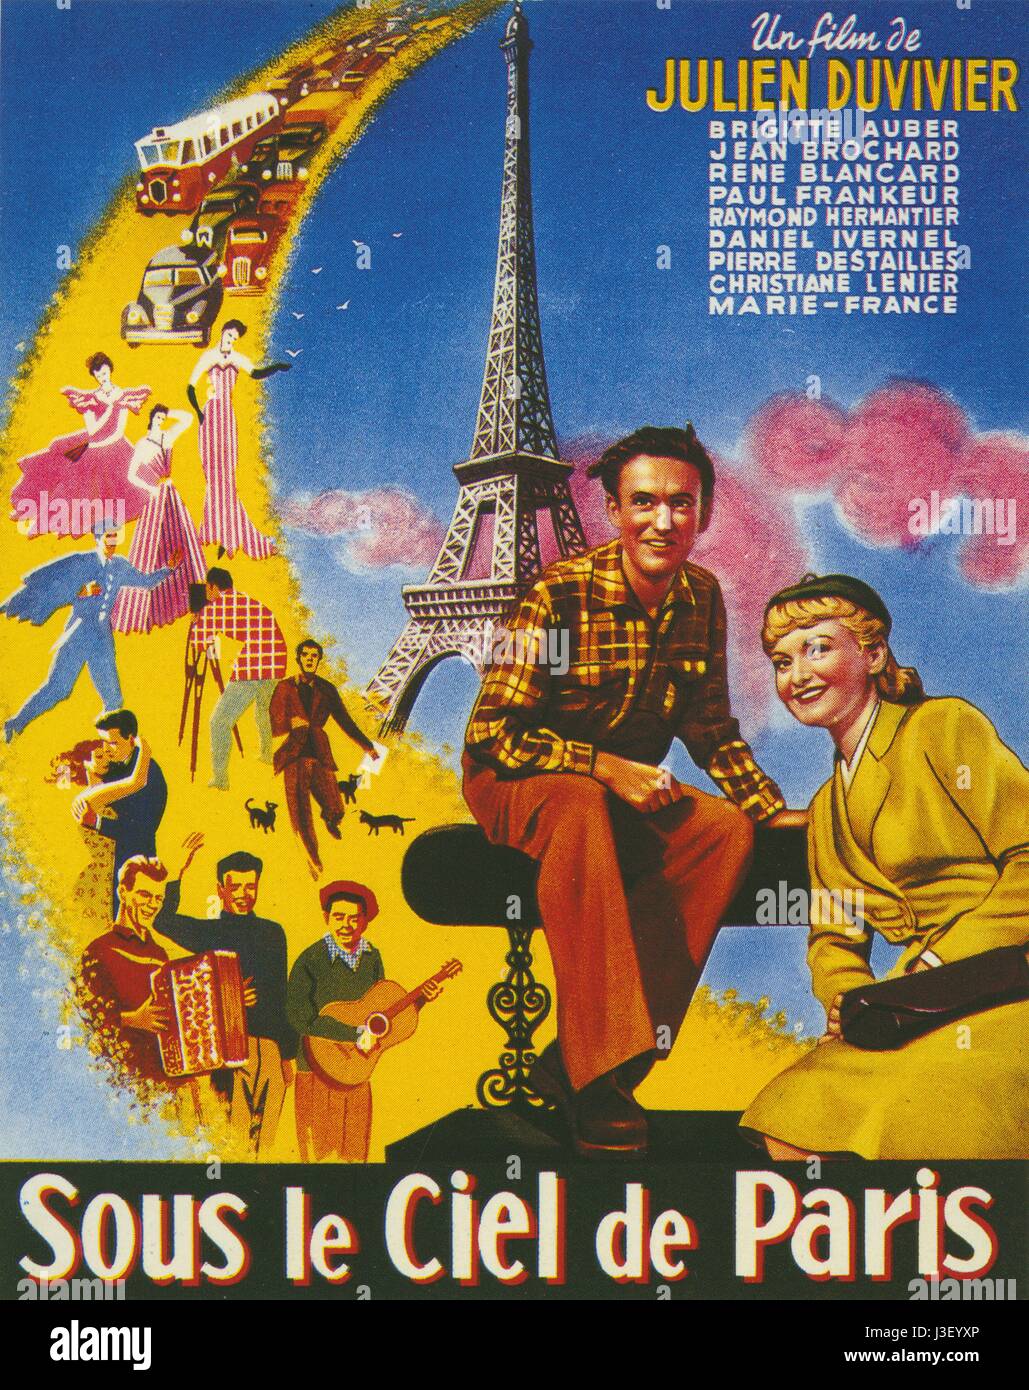 Sous le Ciel de Paris Year: 1951 - France Director: Julien Duvivier Movie poster Stock Photo